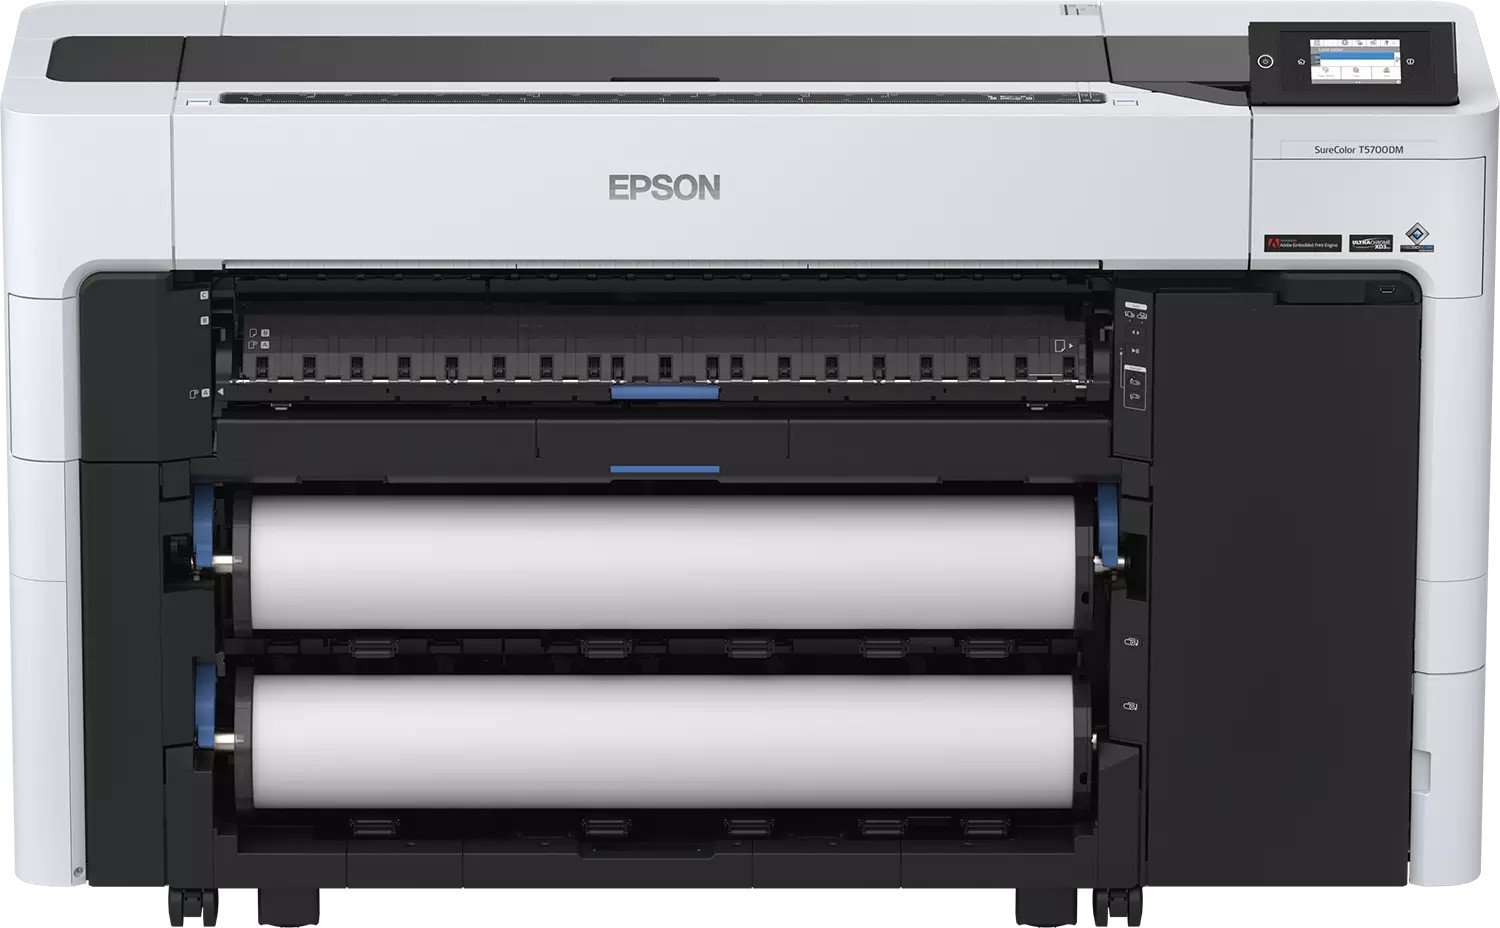 Epson SureColor SC-T5700D